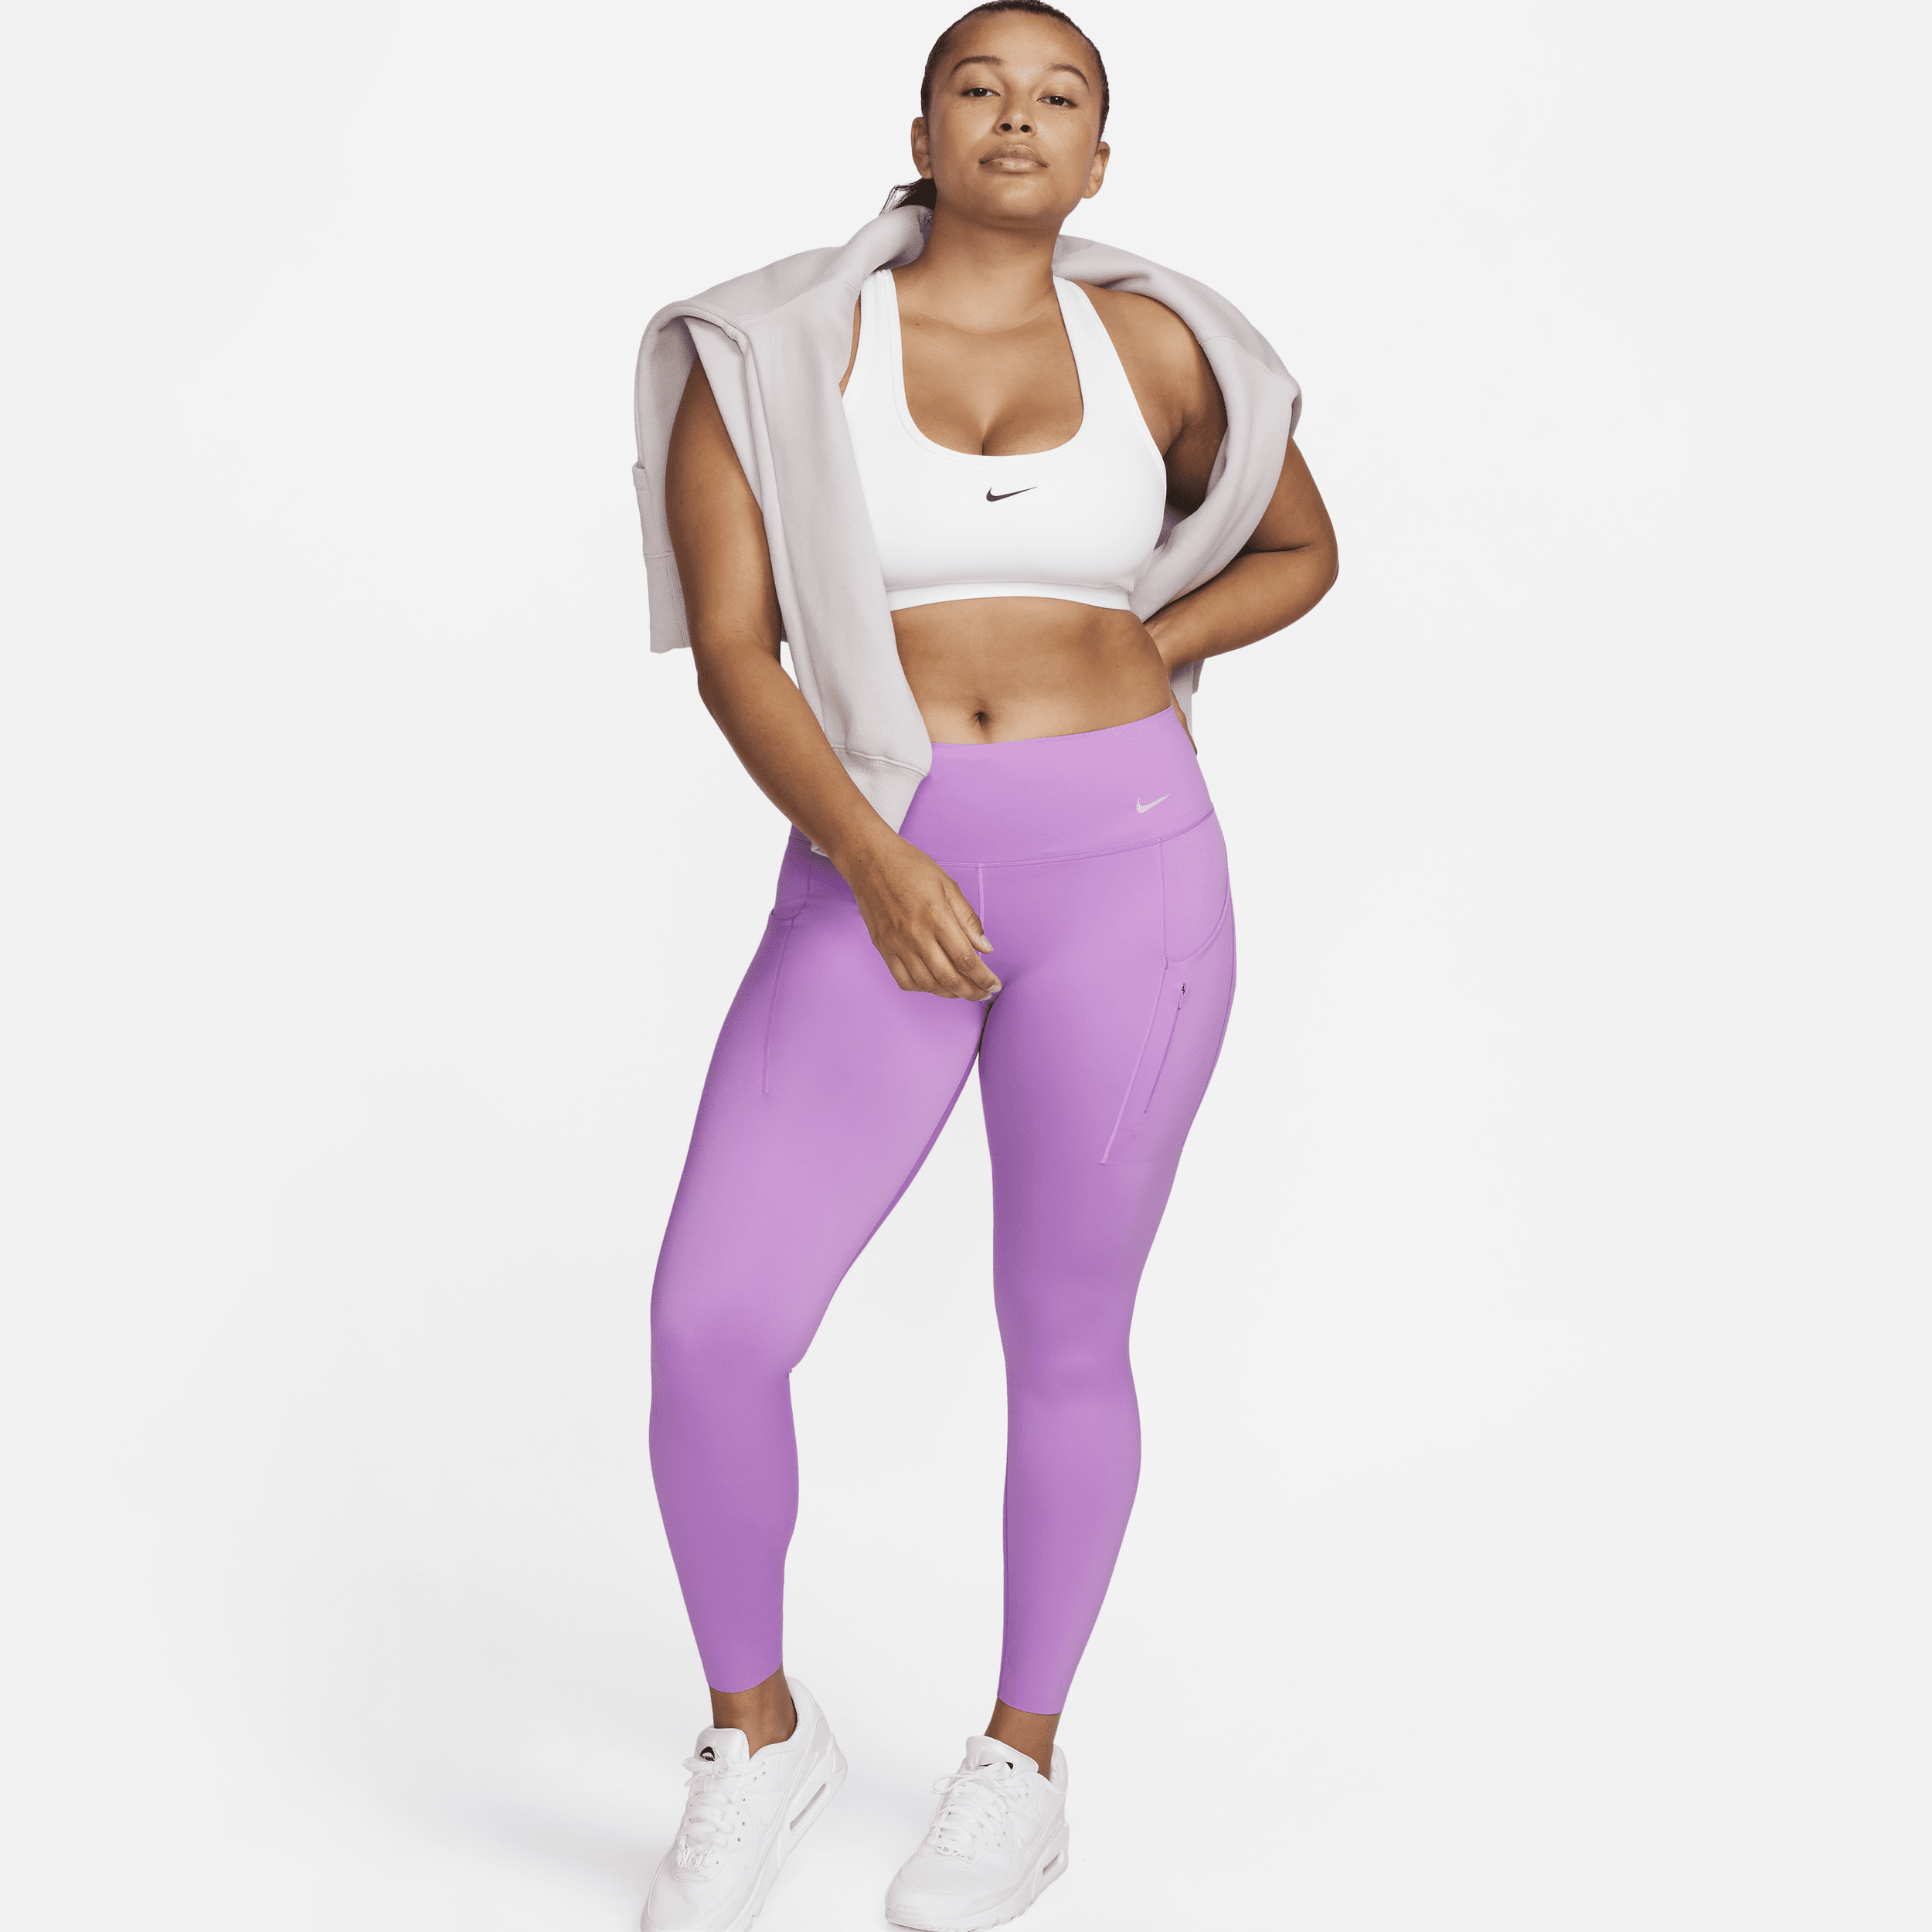 Nike Go Leggings de 7/8 de talle medio y sujeción firme con bolsillos - Mujer - Morado